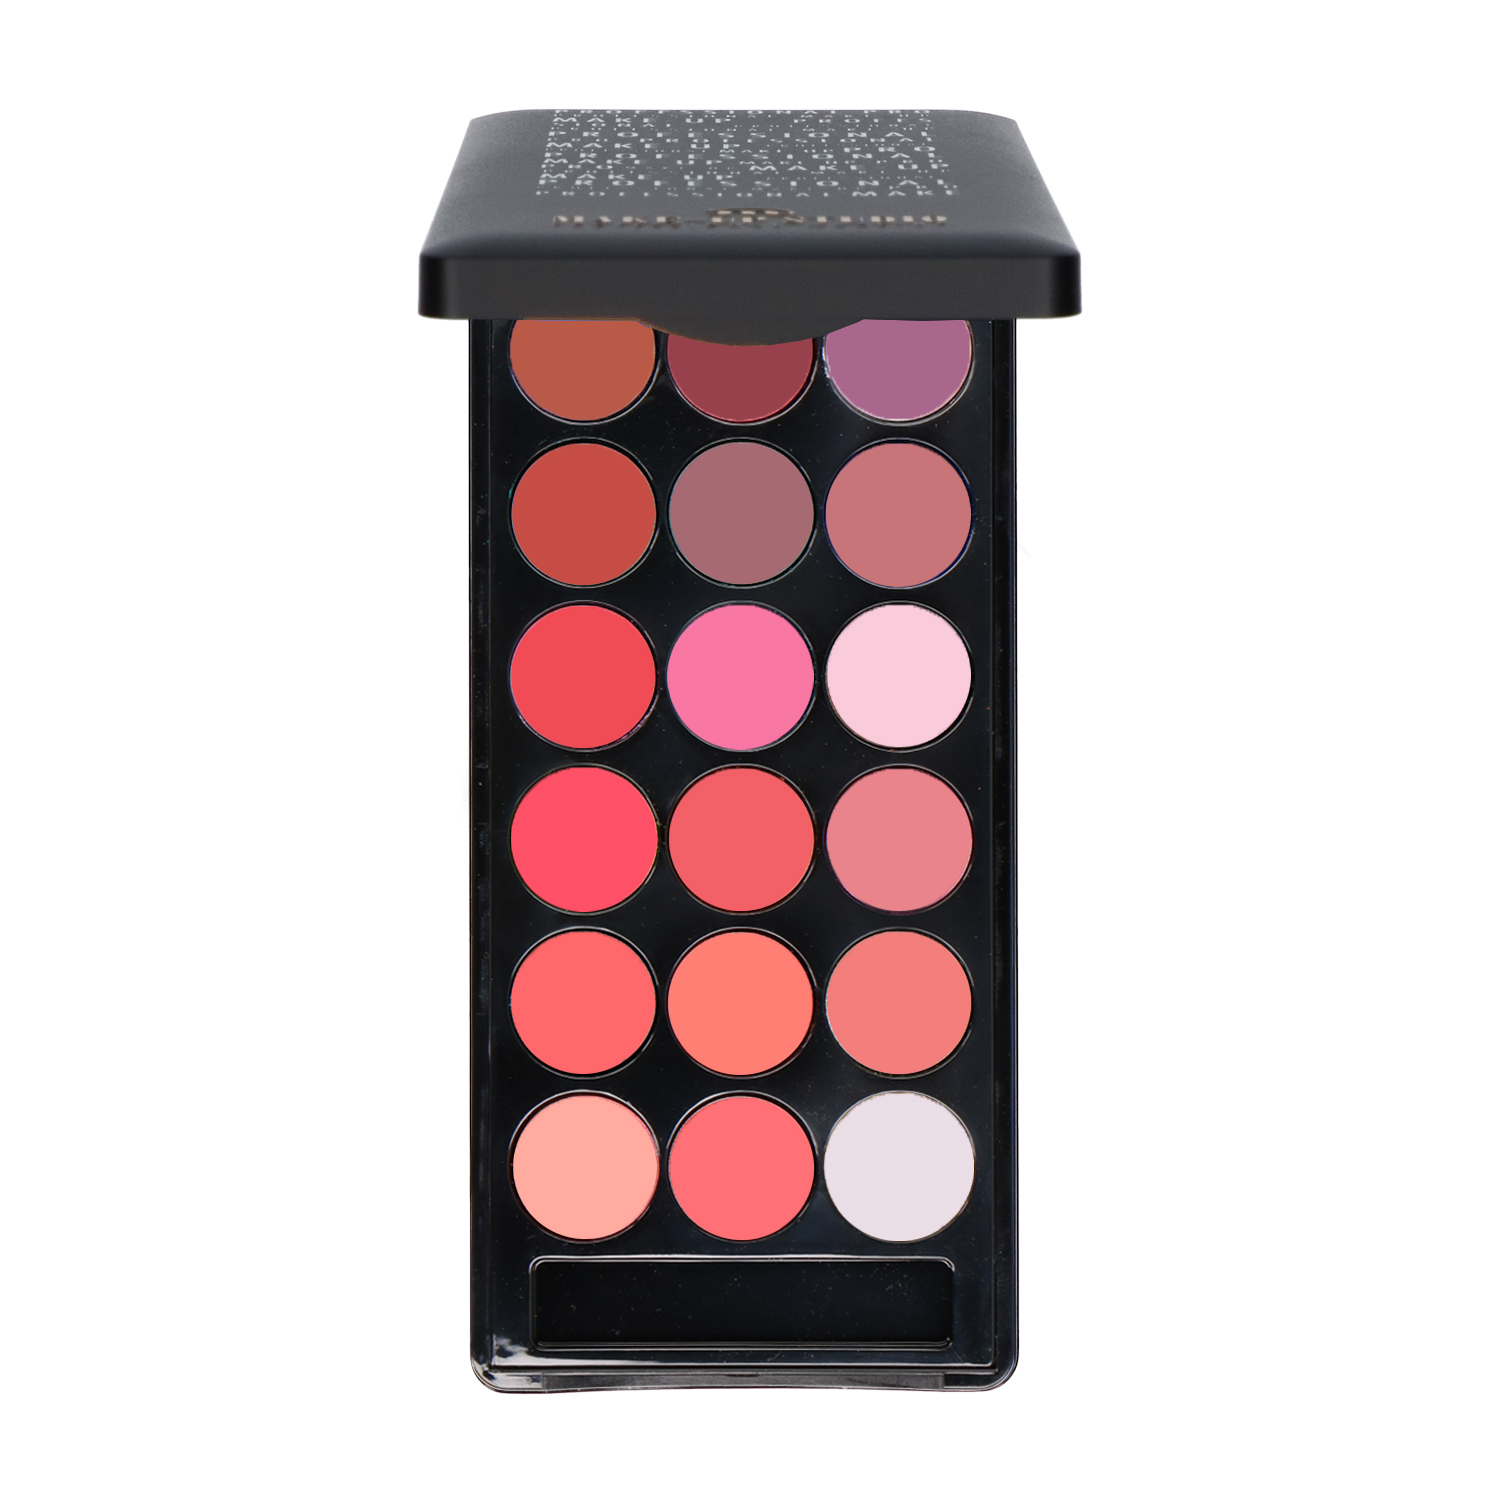 Make-up Studio Lipcolourbox met 18 kleuren lippenstift - 6